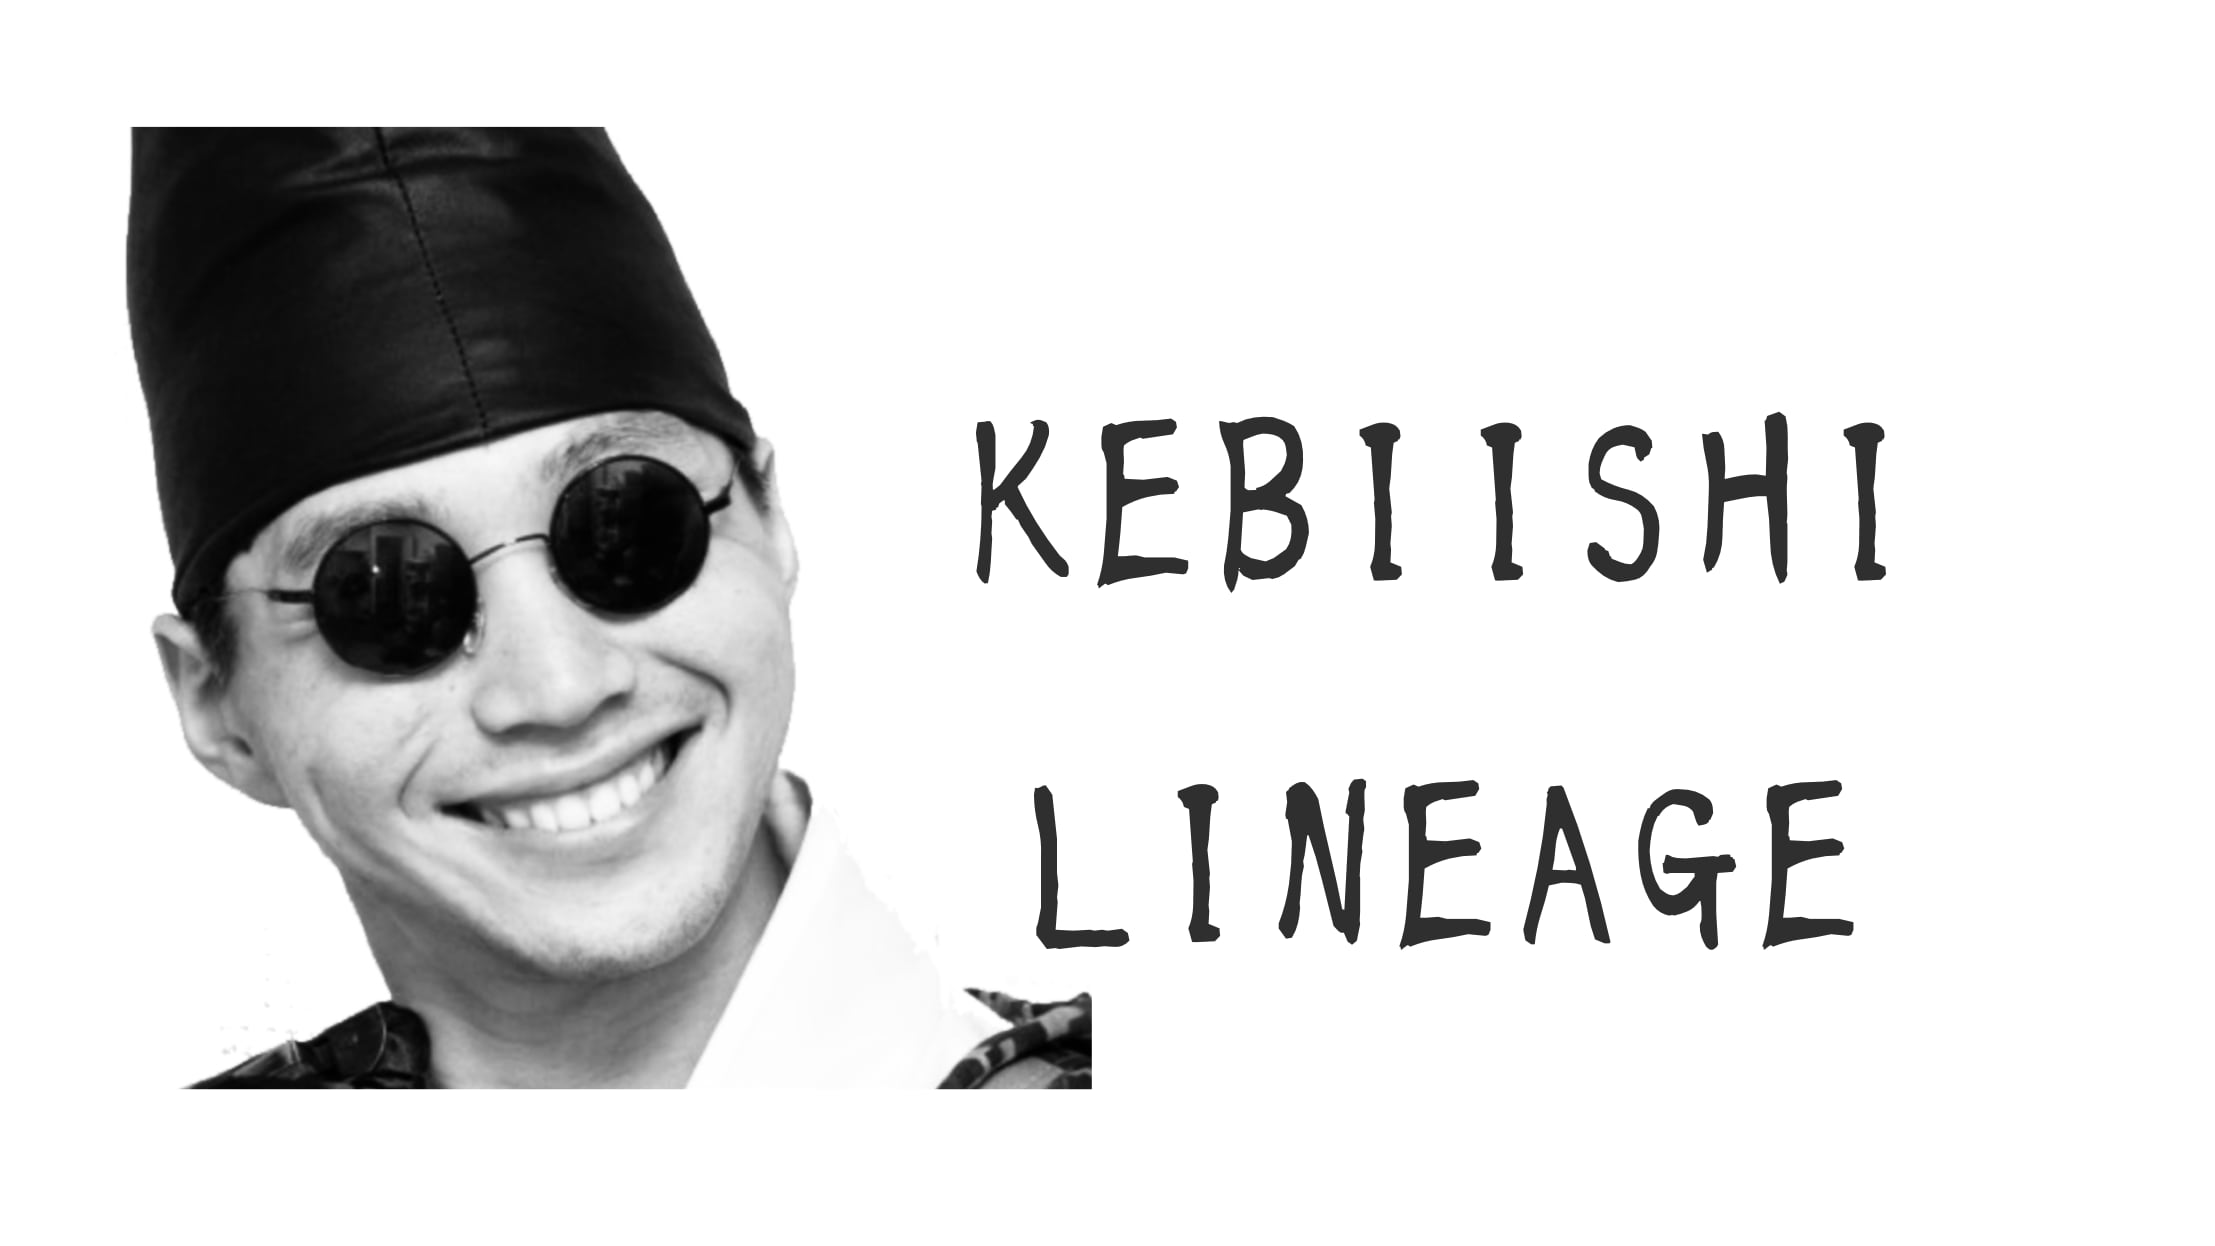 KEBIISHI LINEAGE